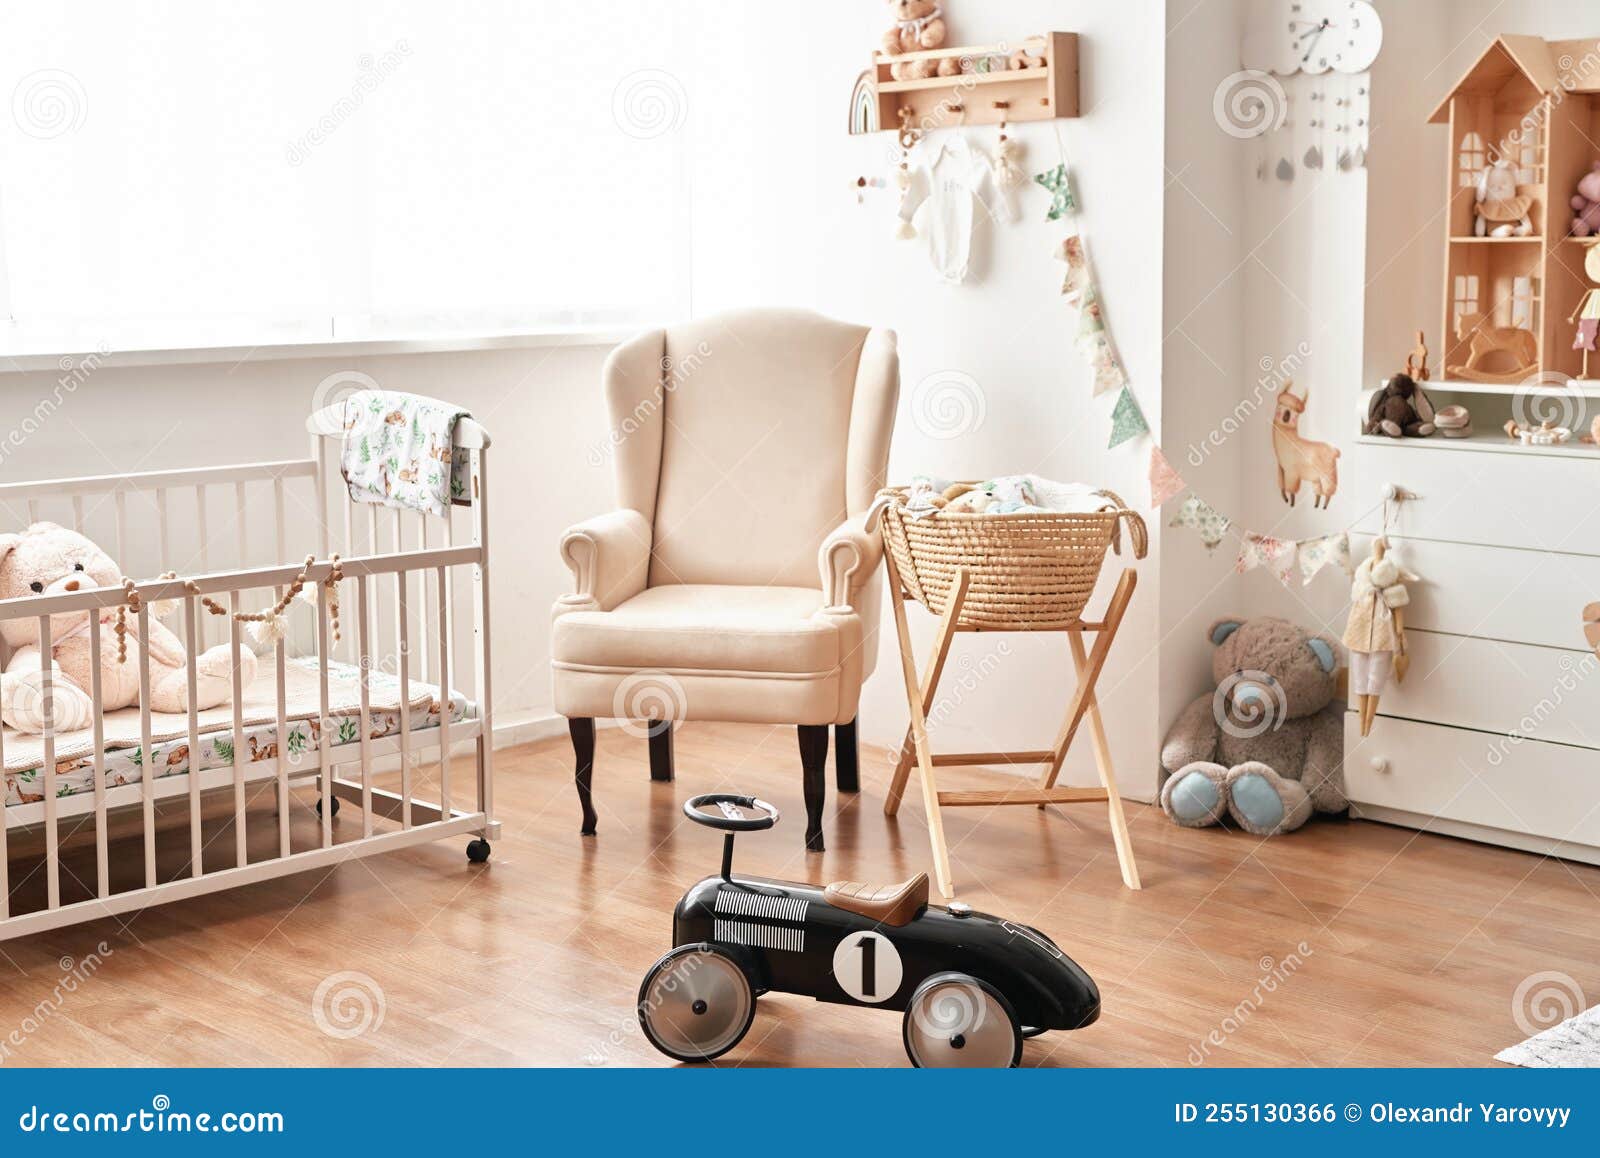 Estilo Escandinavo Interior Blanco Niños Habitación Dormitorio Vivero. Cuna  De Bebé Con Dosel. Foto de archivo - Imagen de muebles, cuna: 239988492